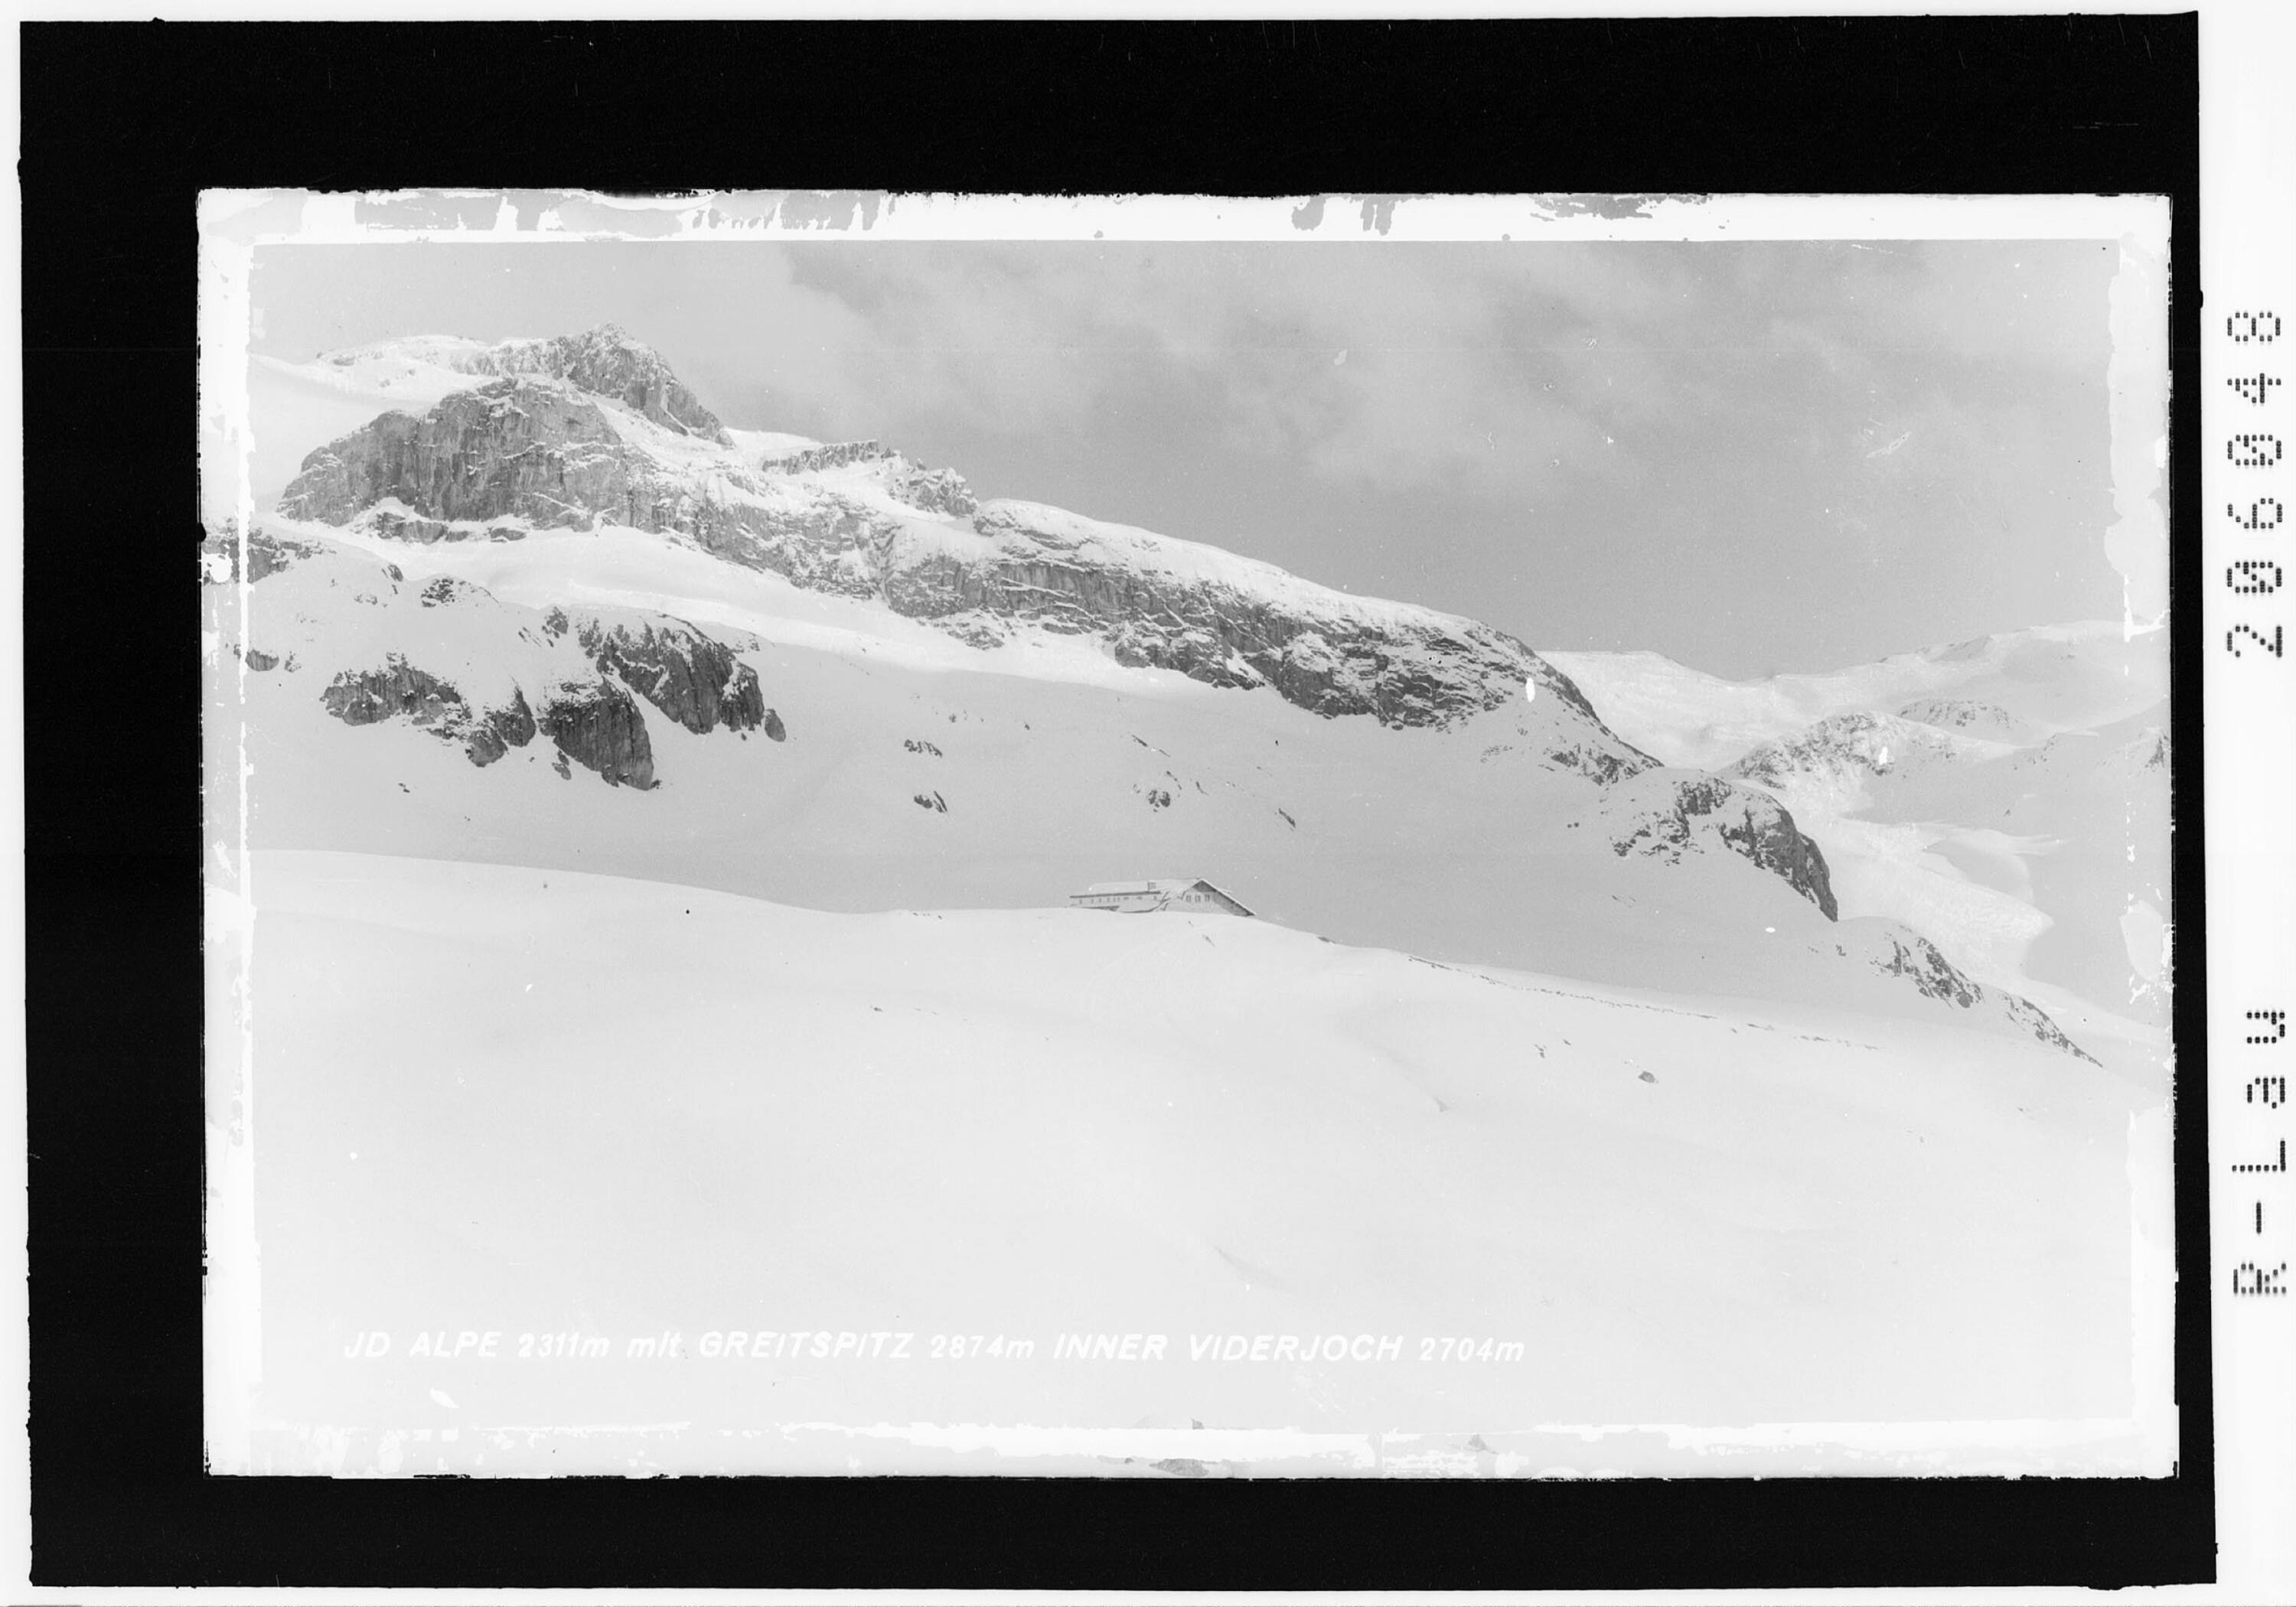 Id Alpe 2311 m gegen mit Greitspitze 2874 m und Innner Viderjoch 2704 m></div>


    <hr>
    <div class=